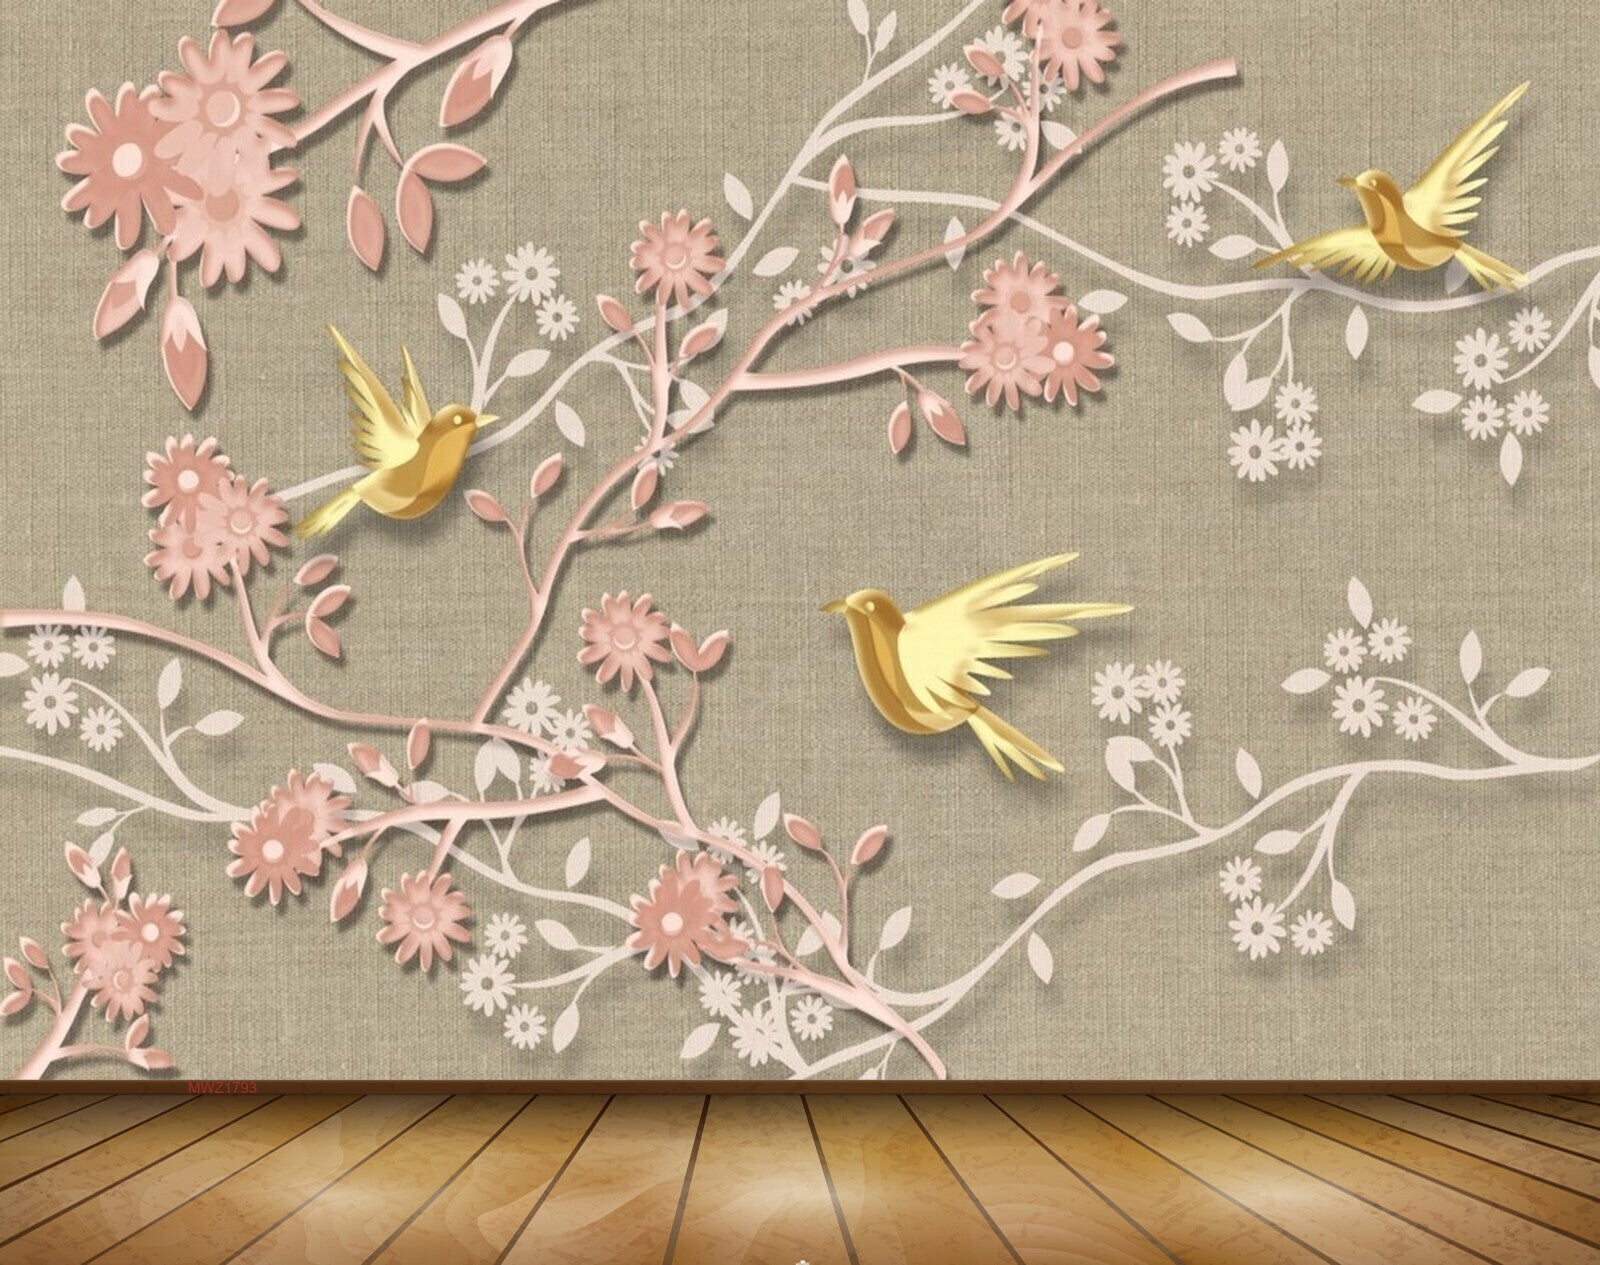 Avikalp MWZ1793 Peach Flowers Birds 3D HD Wallpaper